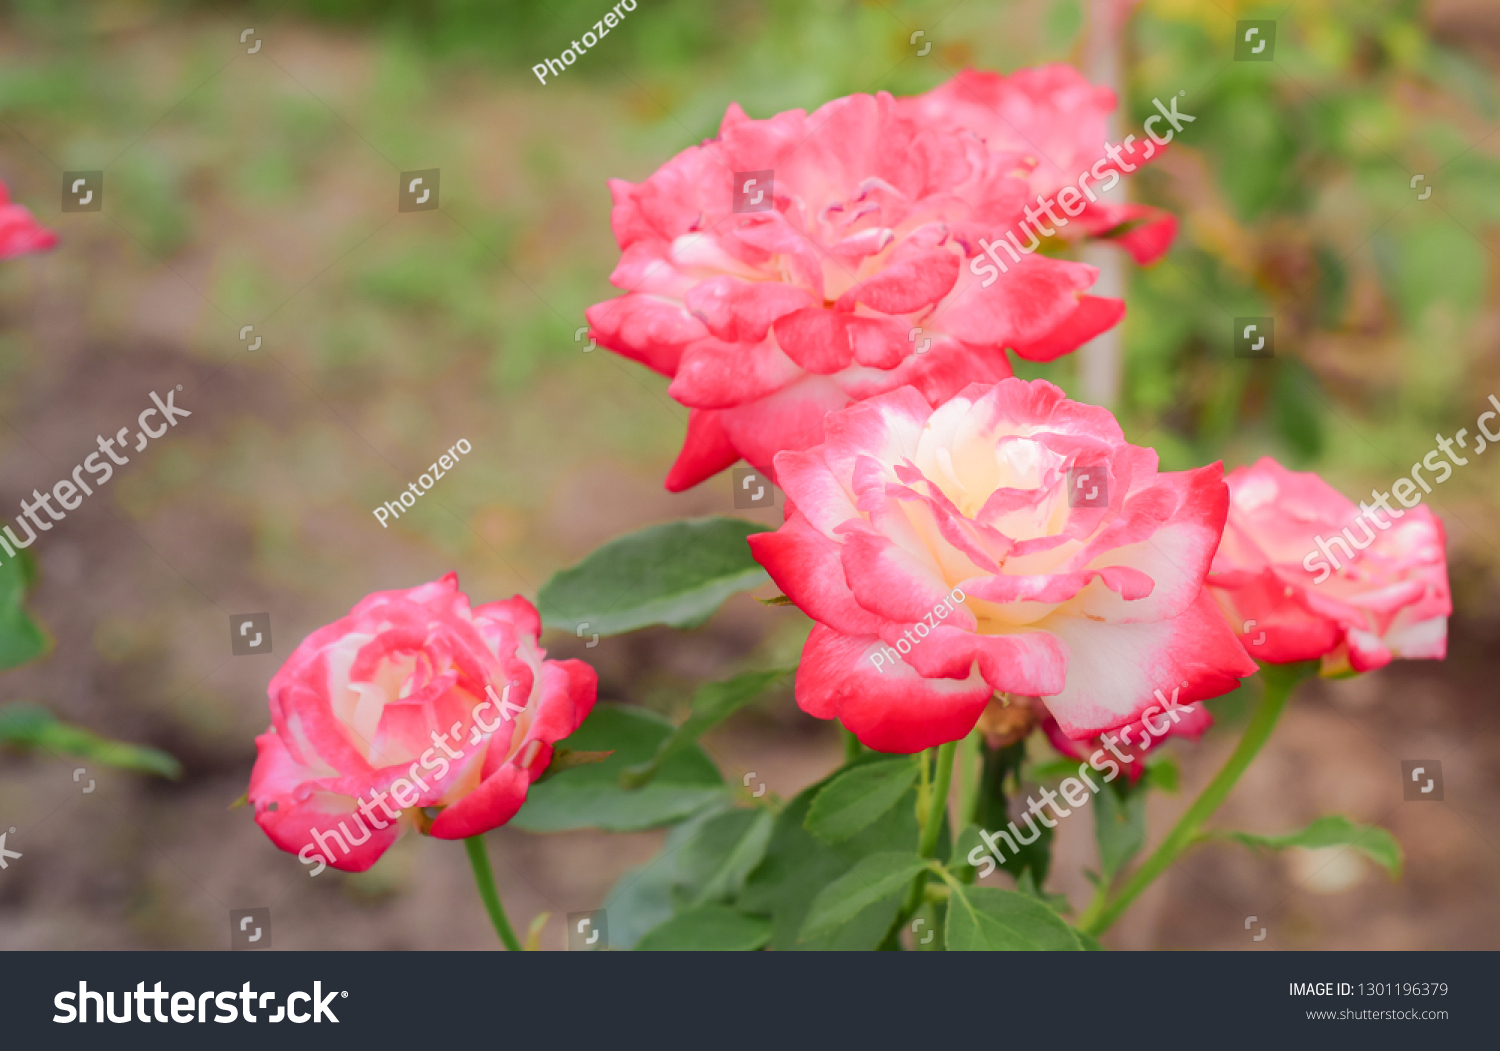 Roses flower in garden. #1301196379